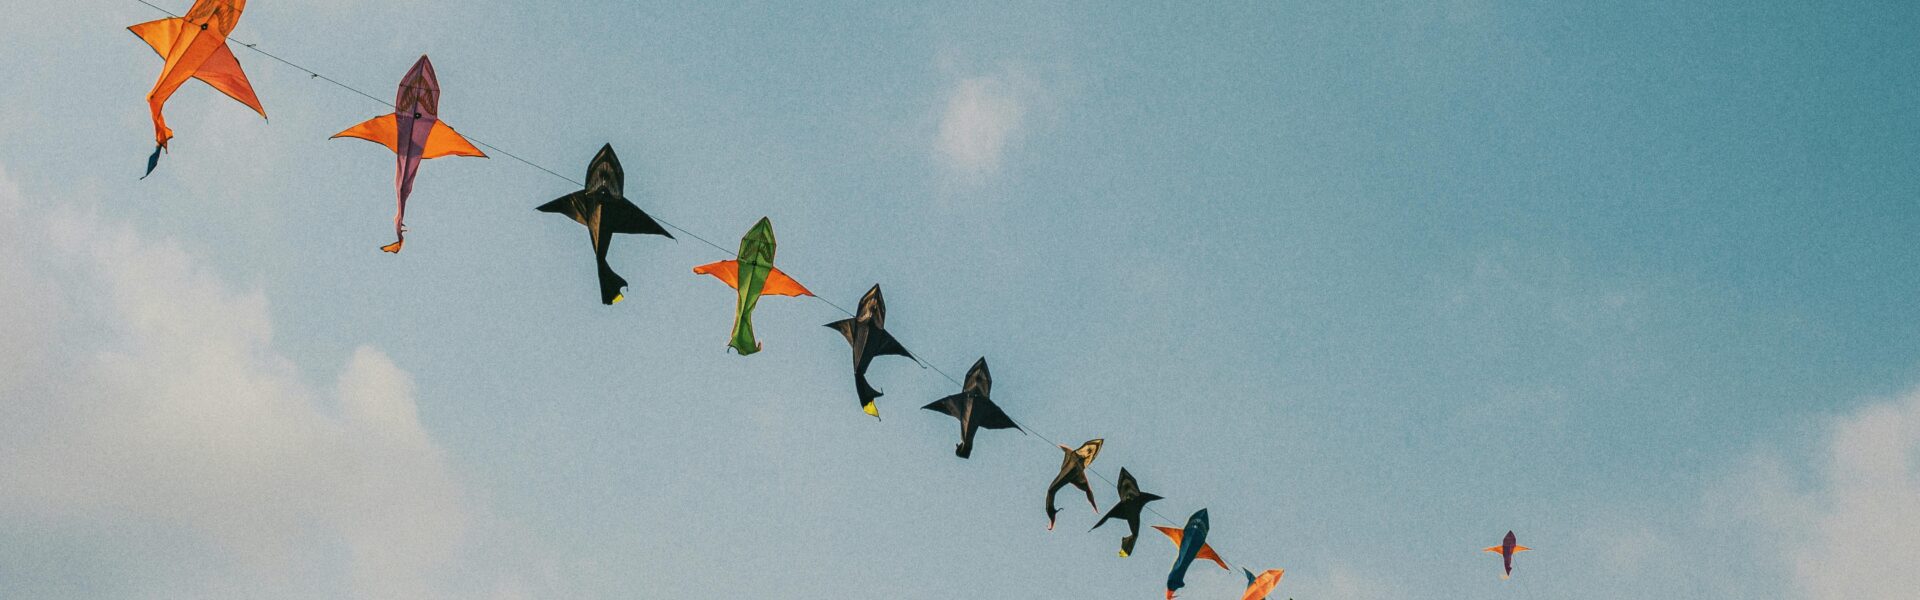 Makar sankranti kite flying